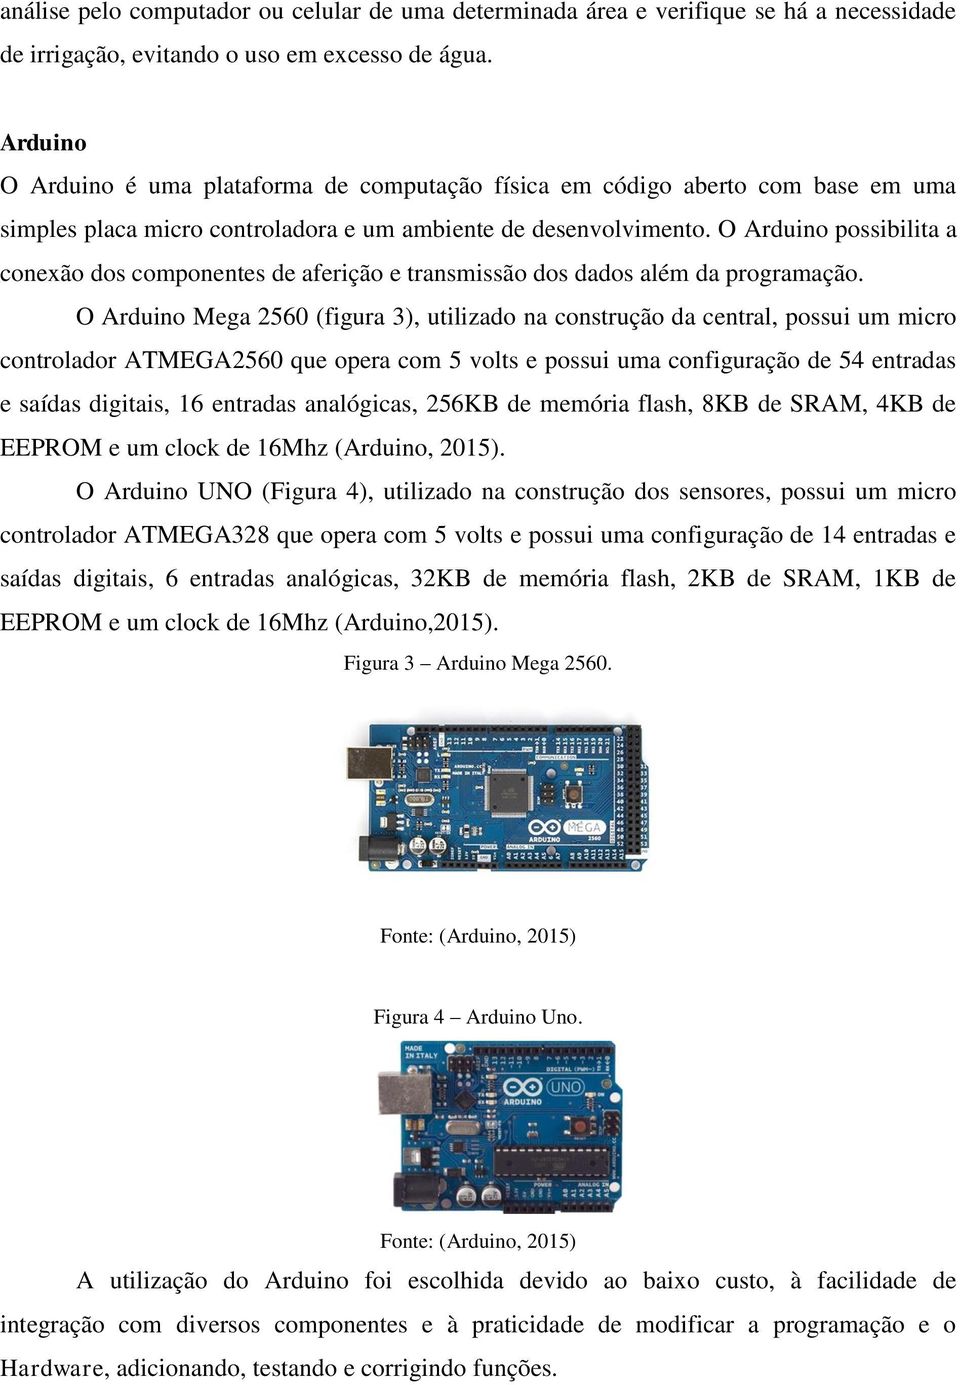 O Arduino possibilita a conexão dos componentes de aferição e transmissão dos dados além da programação.